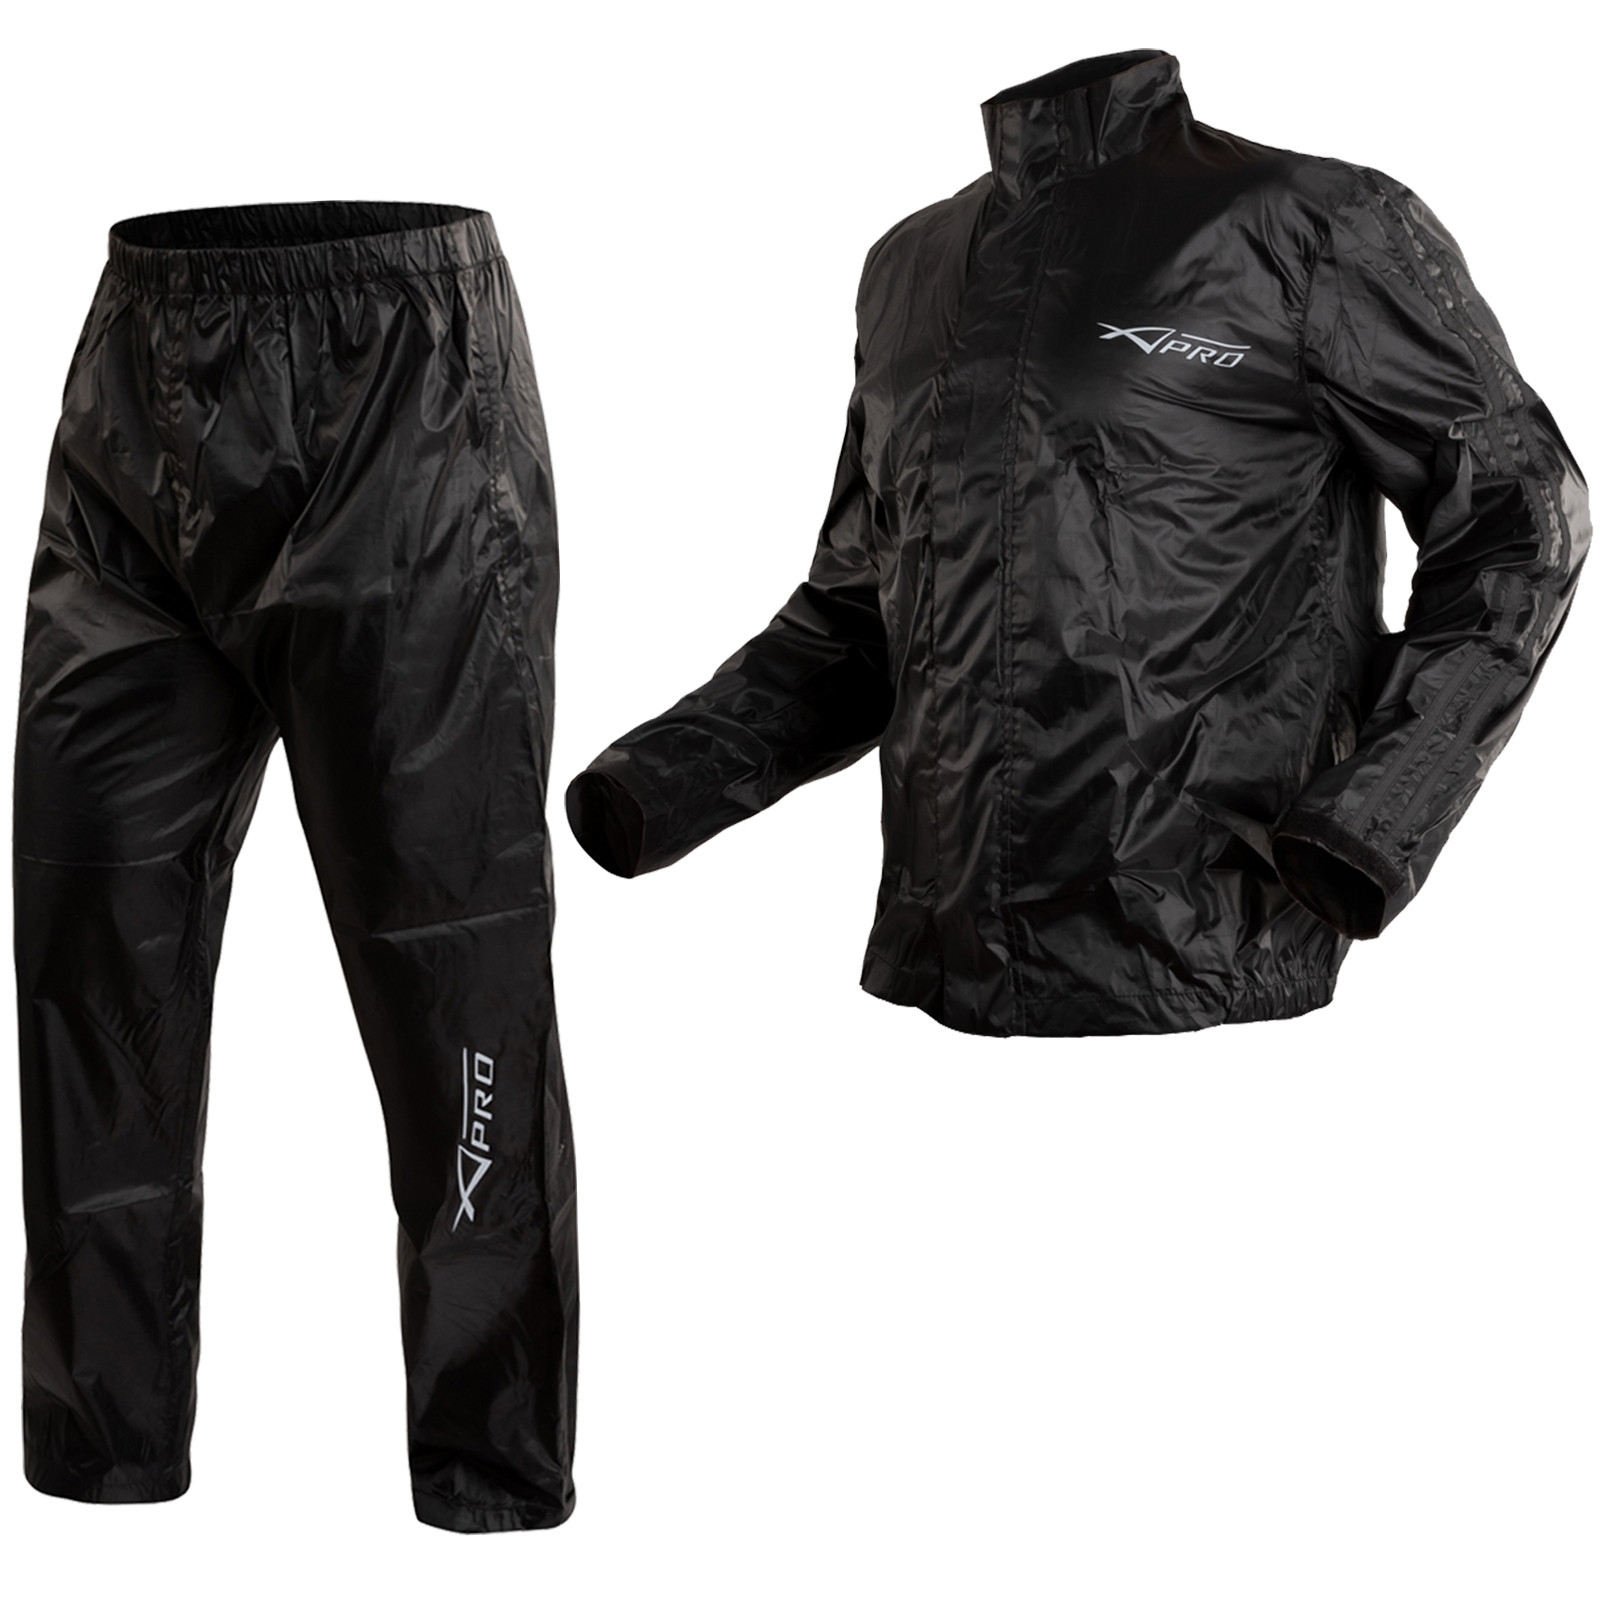 Abbigliamento Moto e Accessori - Tuta Impermeabile Giacca Pantaloni  Combinazione Antipioggia alta Nero Visibilità